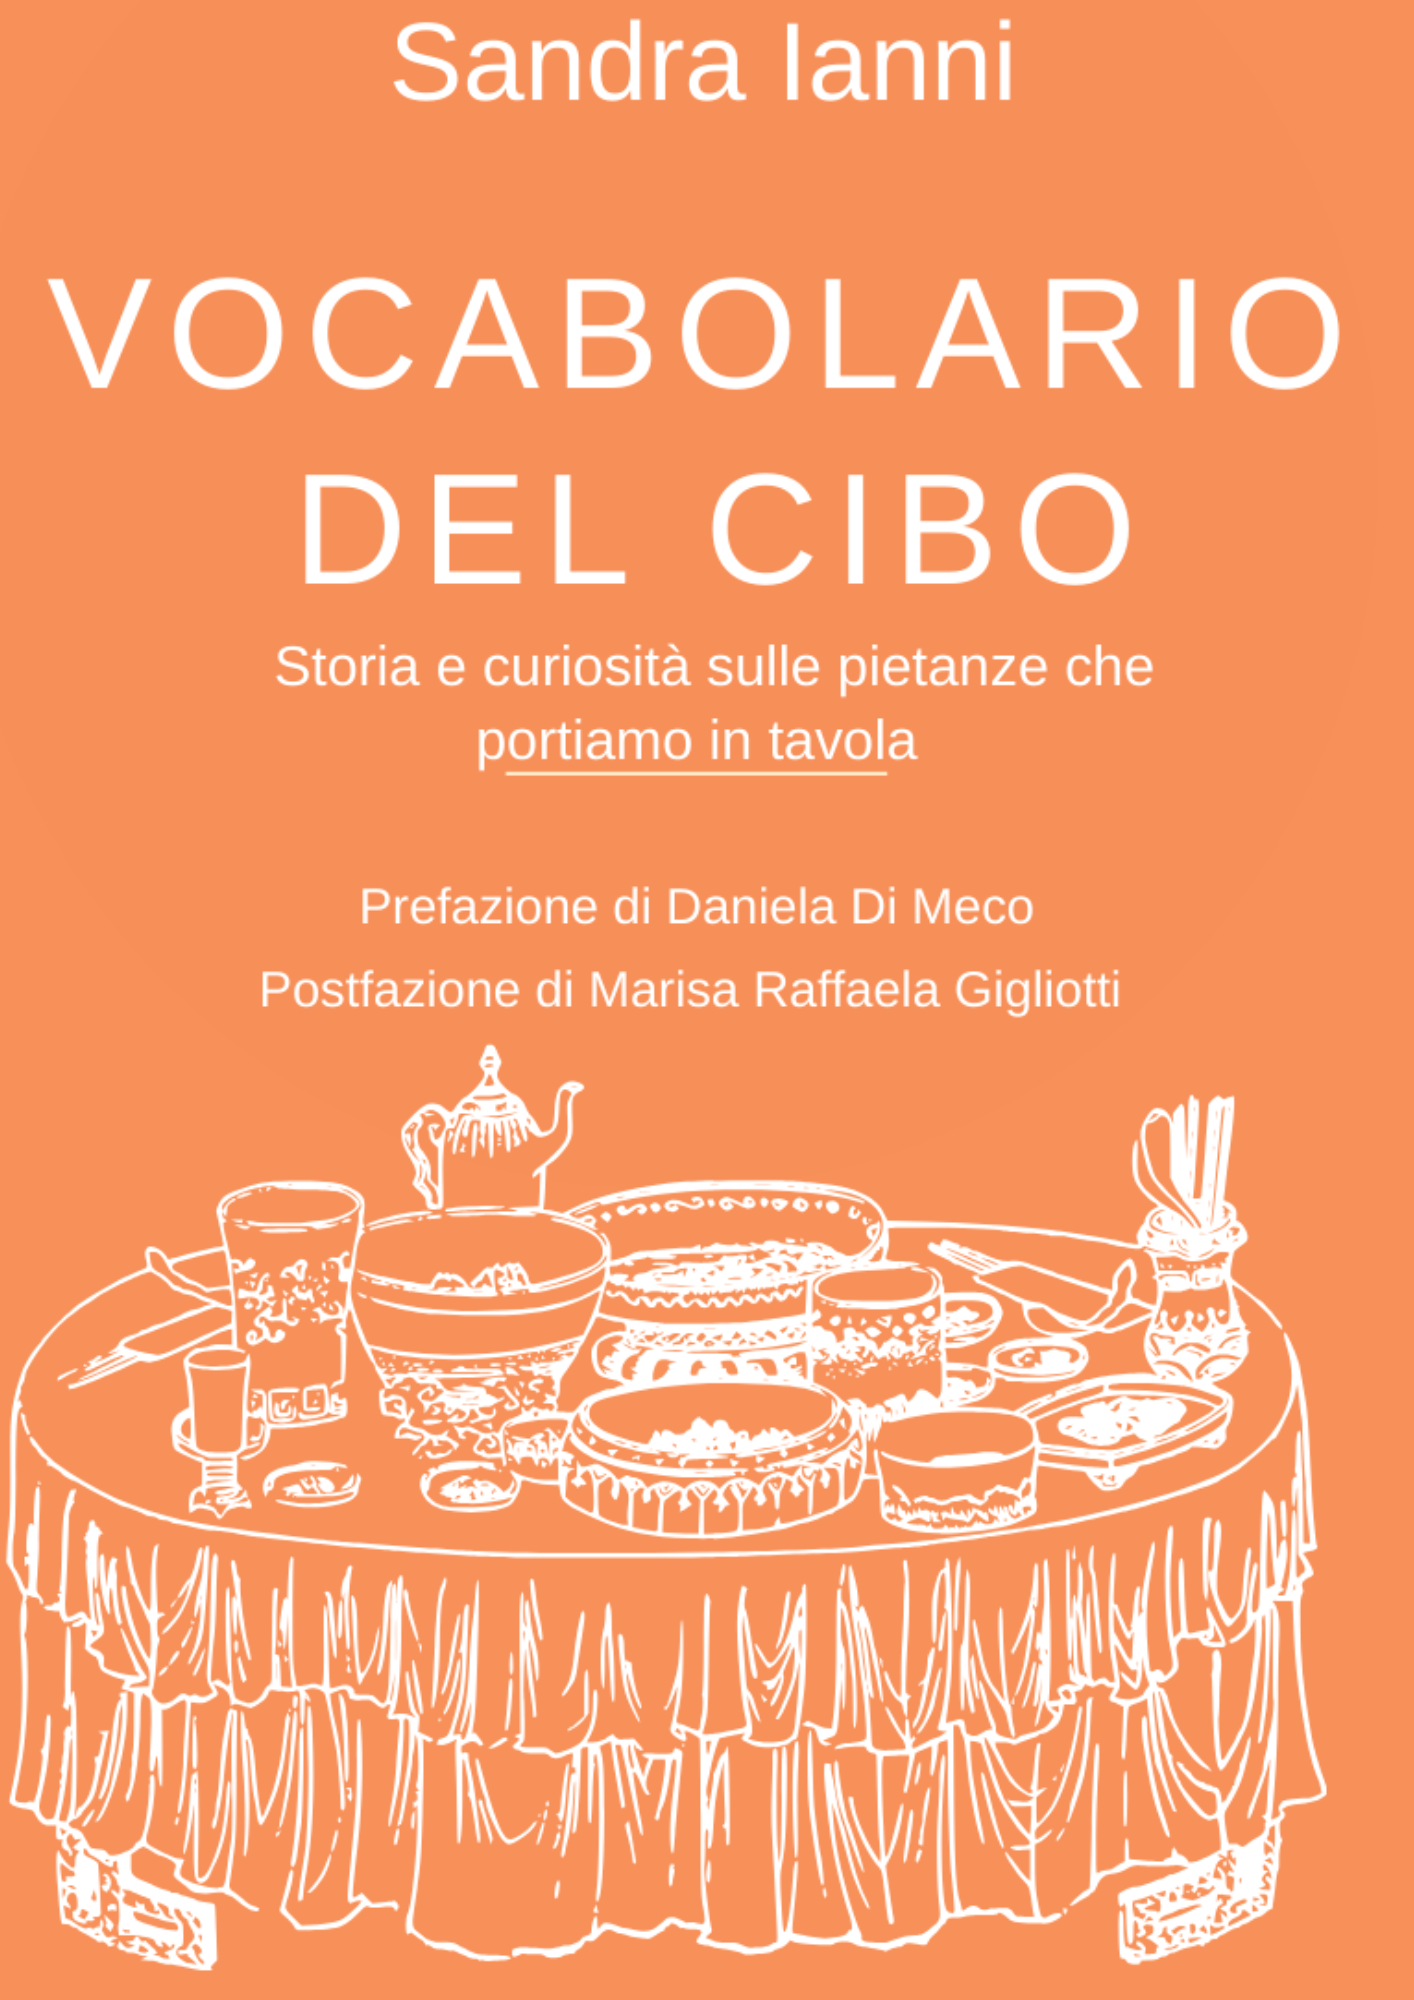 Anguillara: al Museo della Civiltà Contadina presentazione de “Vocabolario del cibo” scritto da Sandra Ianni, storica della gastronomia